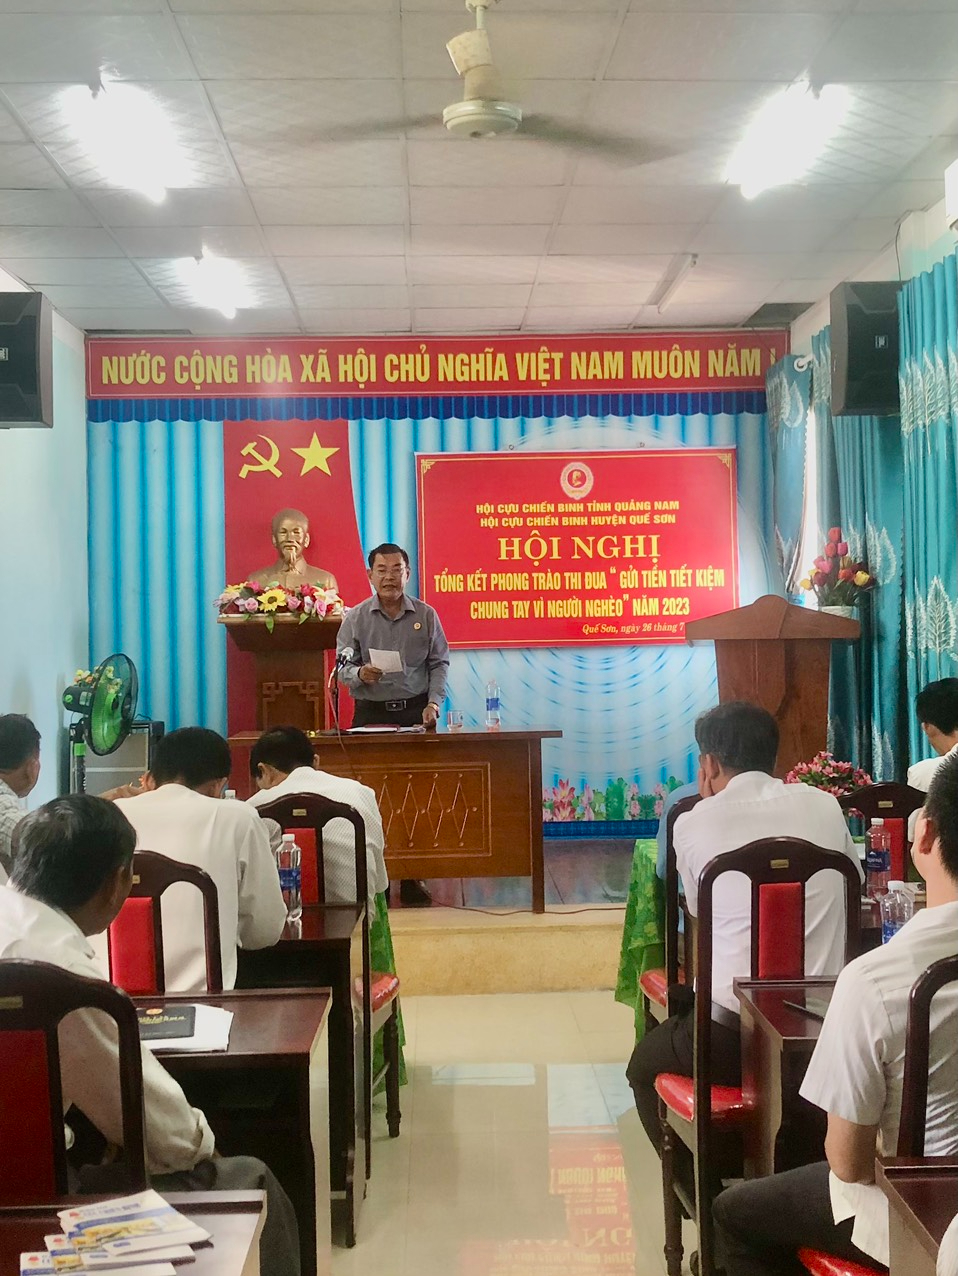 Hội CCB Huyện Quế Sơn tổ chức tổng kết Phong trào “Gửi tiền tiết kiệm chung tay vì người nghèo” năm 2023